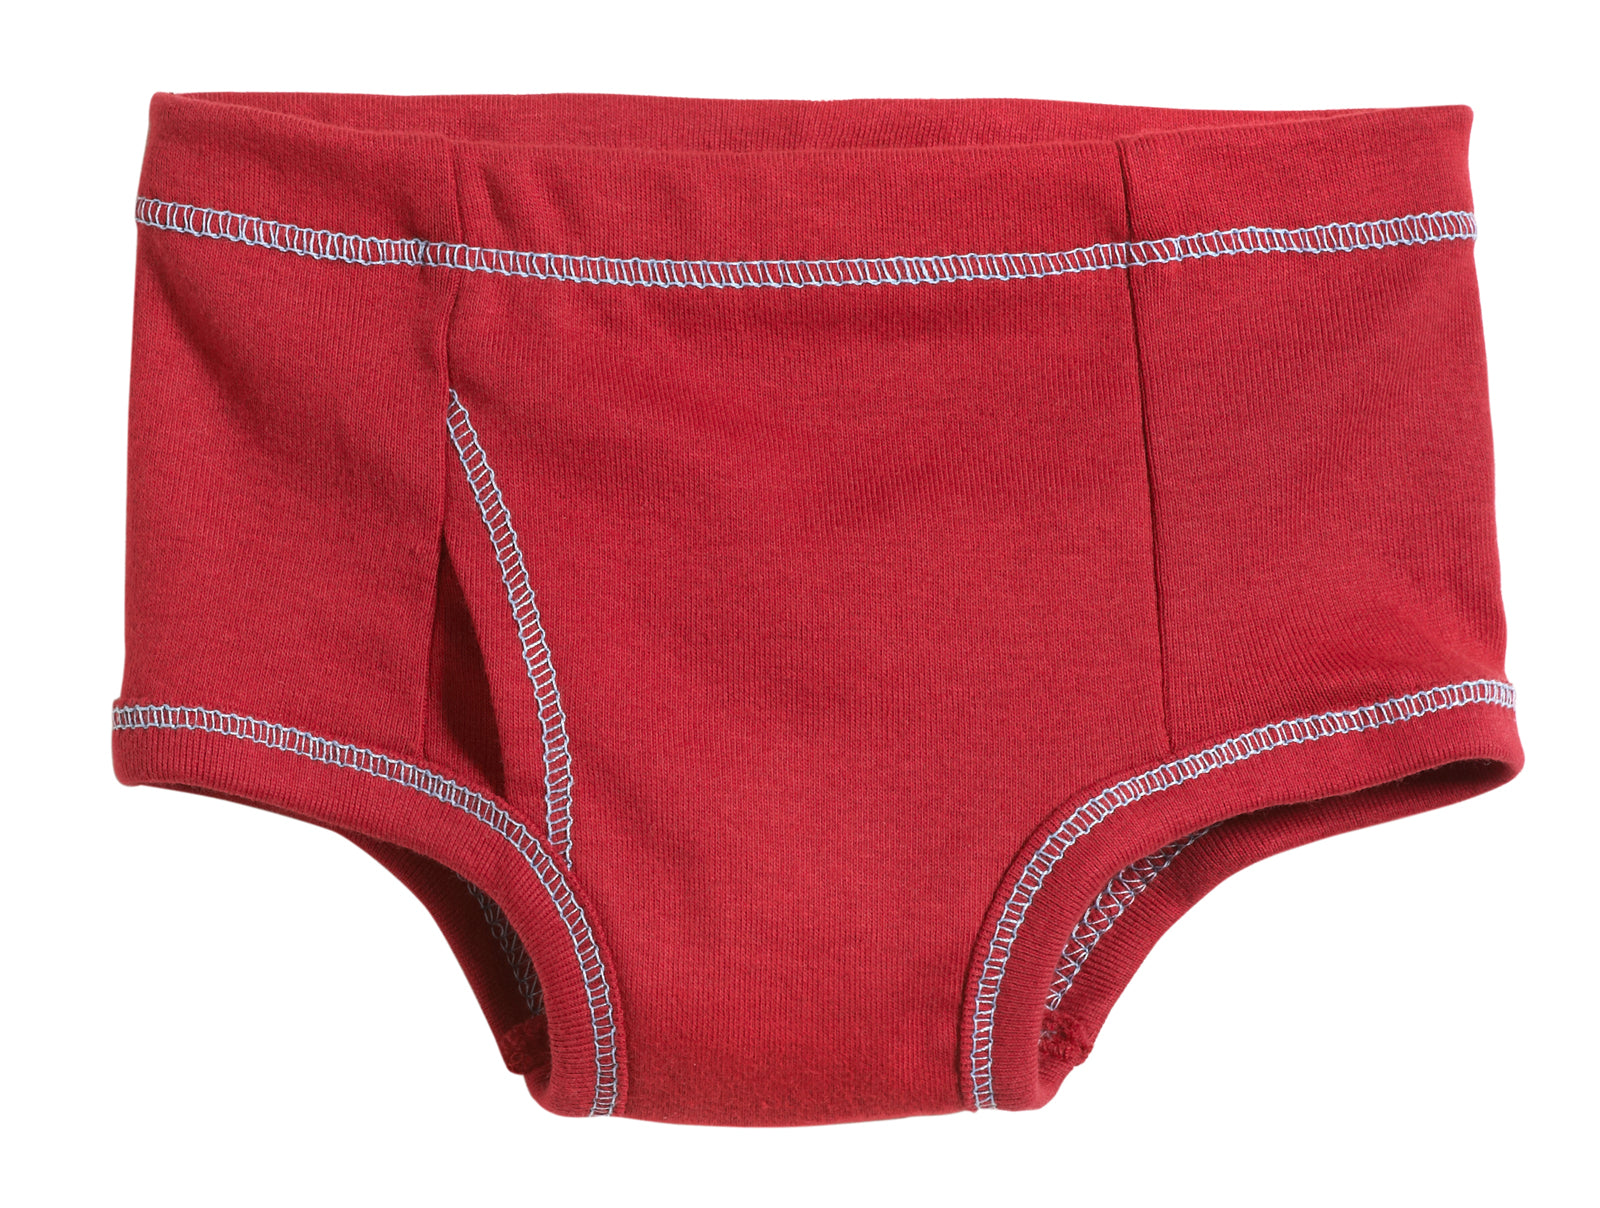 Boys Underwear, Boys Briefs, Kids Underwear, Toddler Underwear